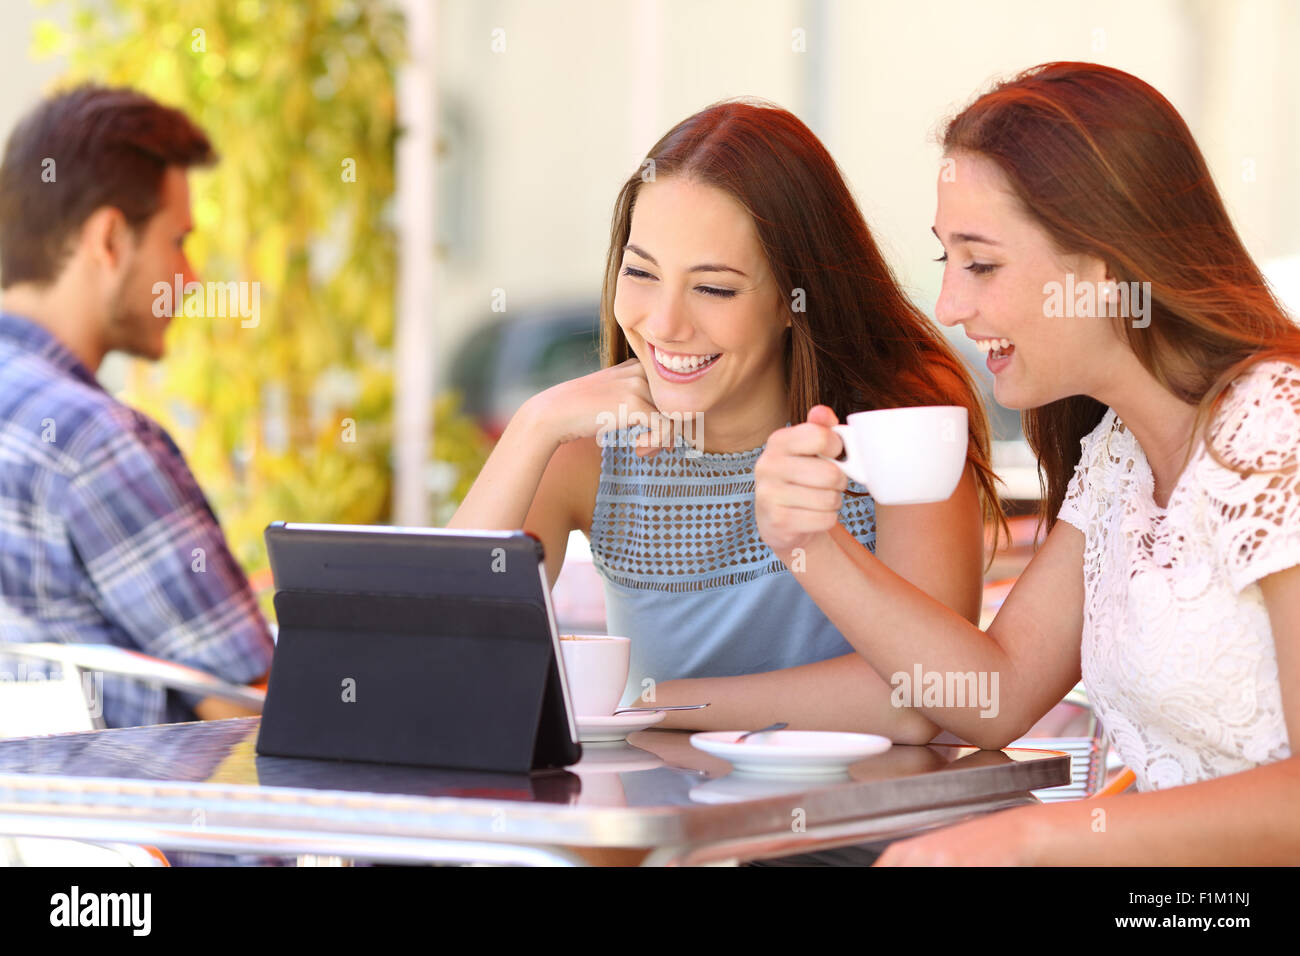 Deux amis ou soeurs de regarder des vidéos dans une tablette dans un café terrasse Banque D'Images